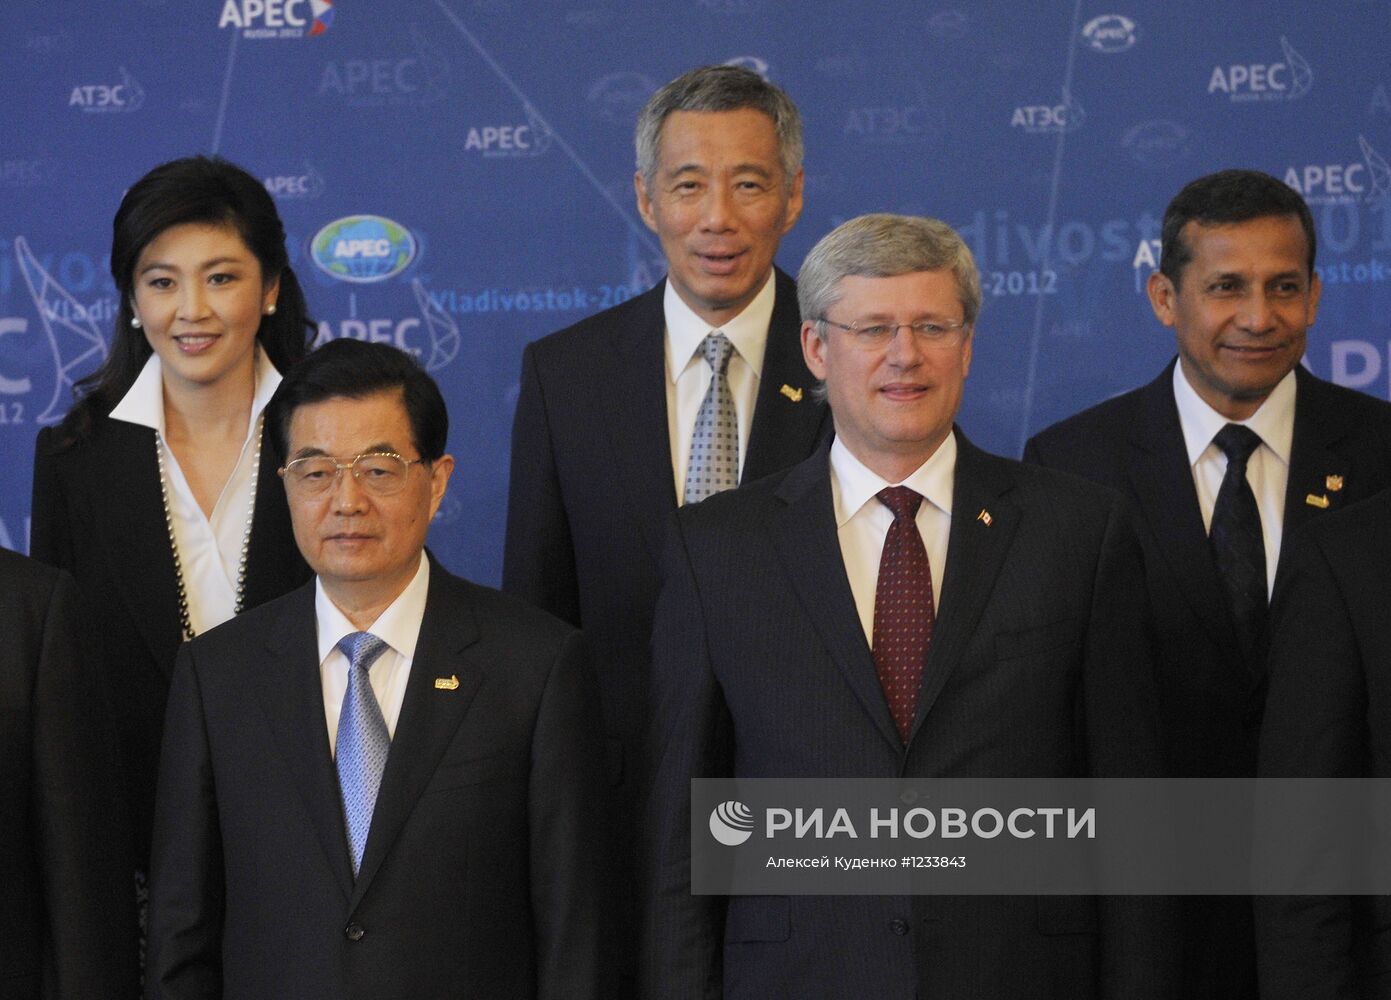 Официальное фотографирование лидеров экономик АТЭС